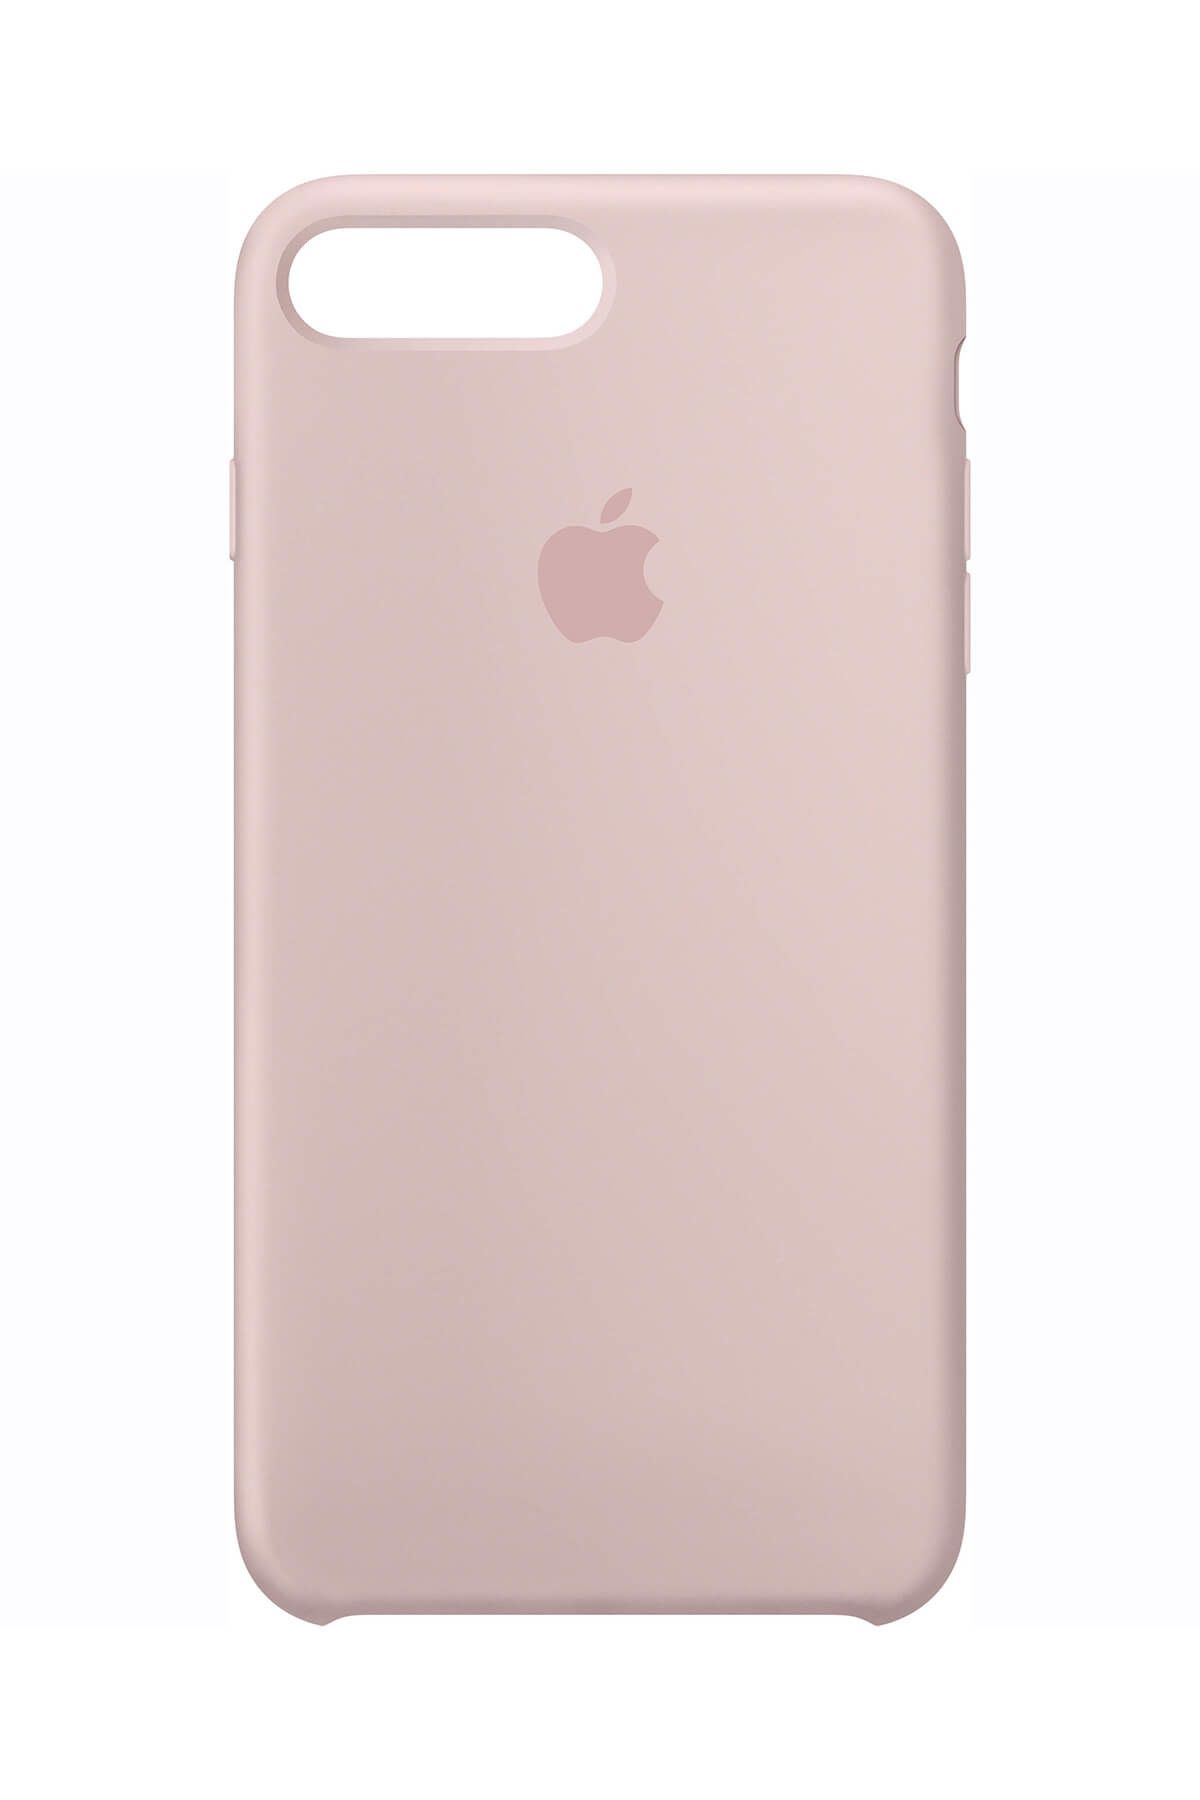 Telefon Aksesuarları Iphone S7+ Pembe Kum / Pink Sand